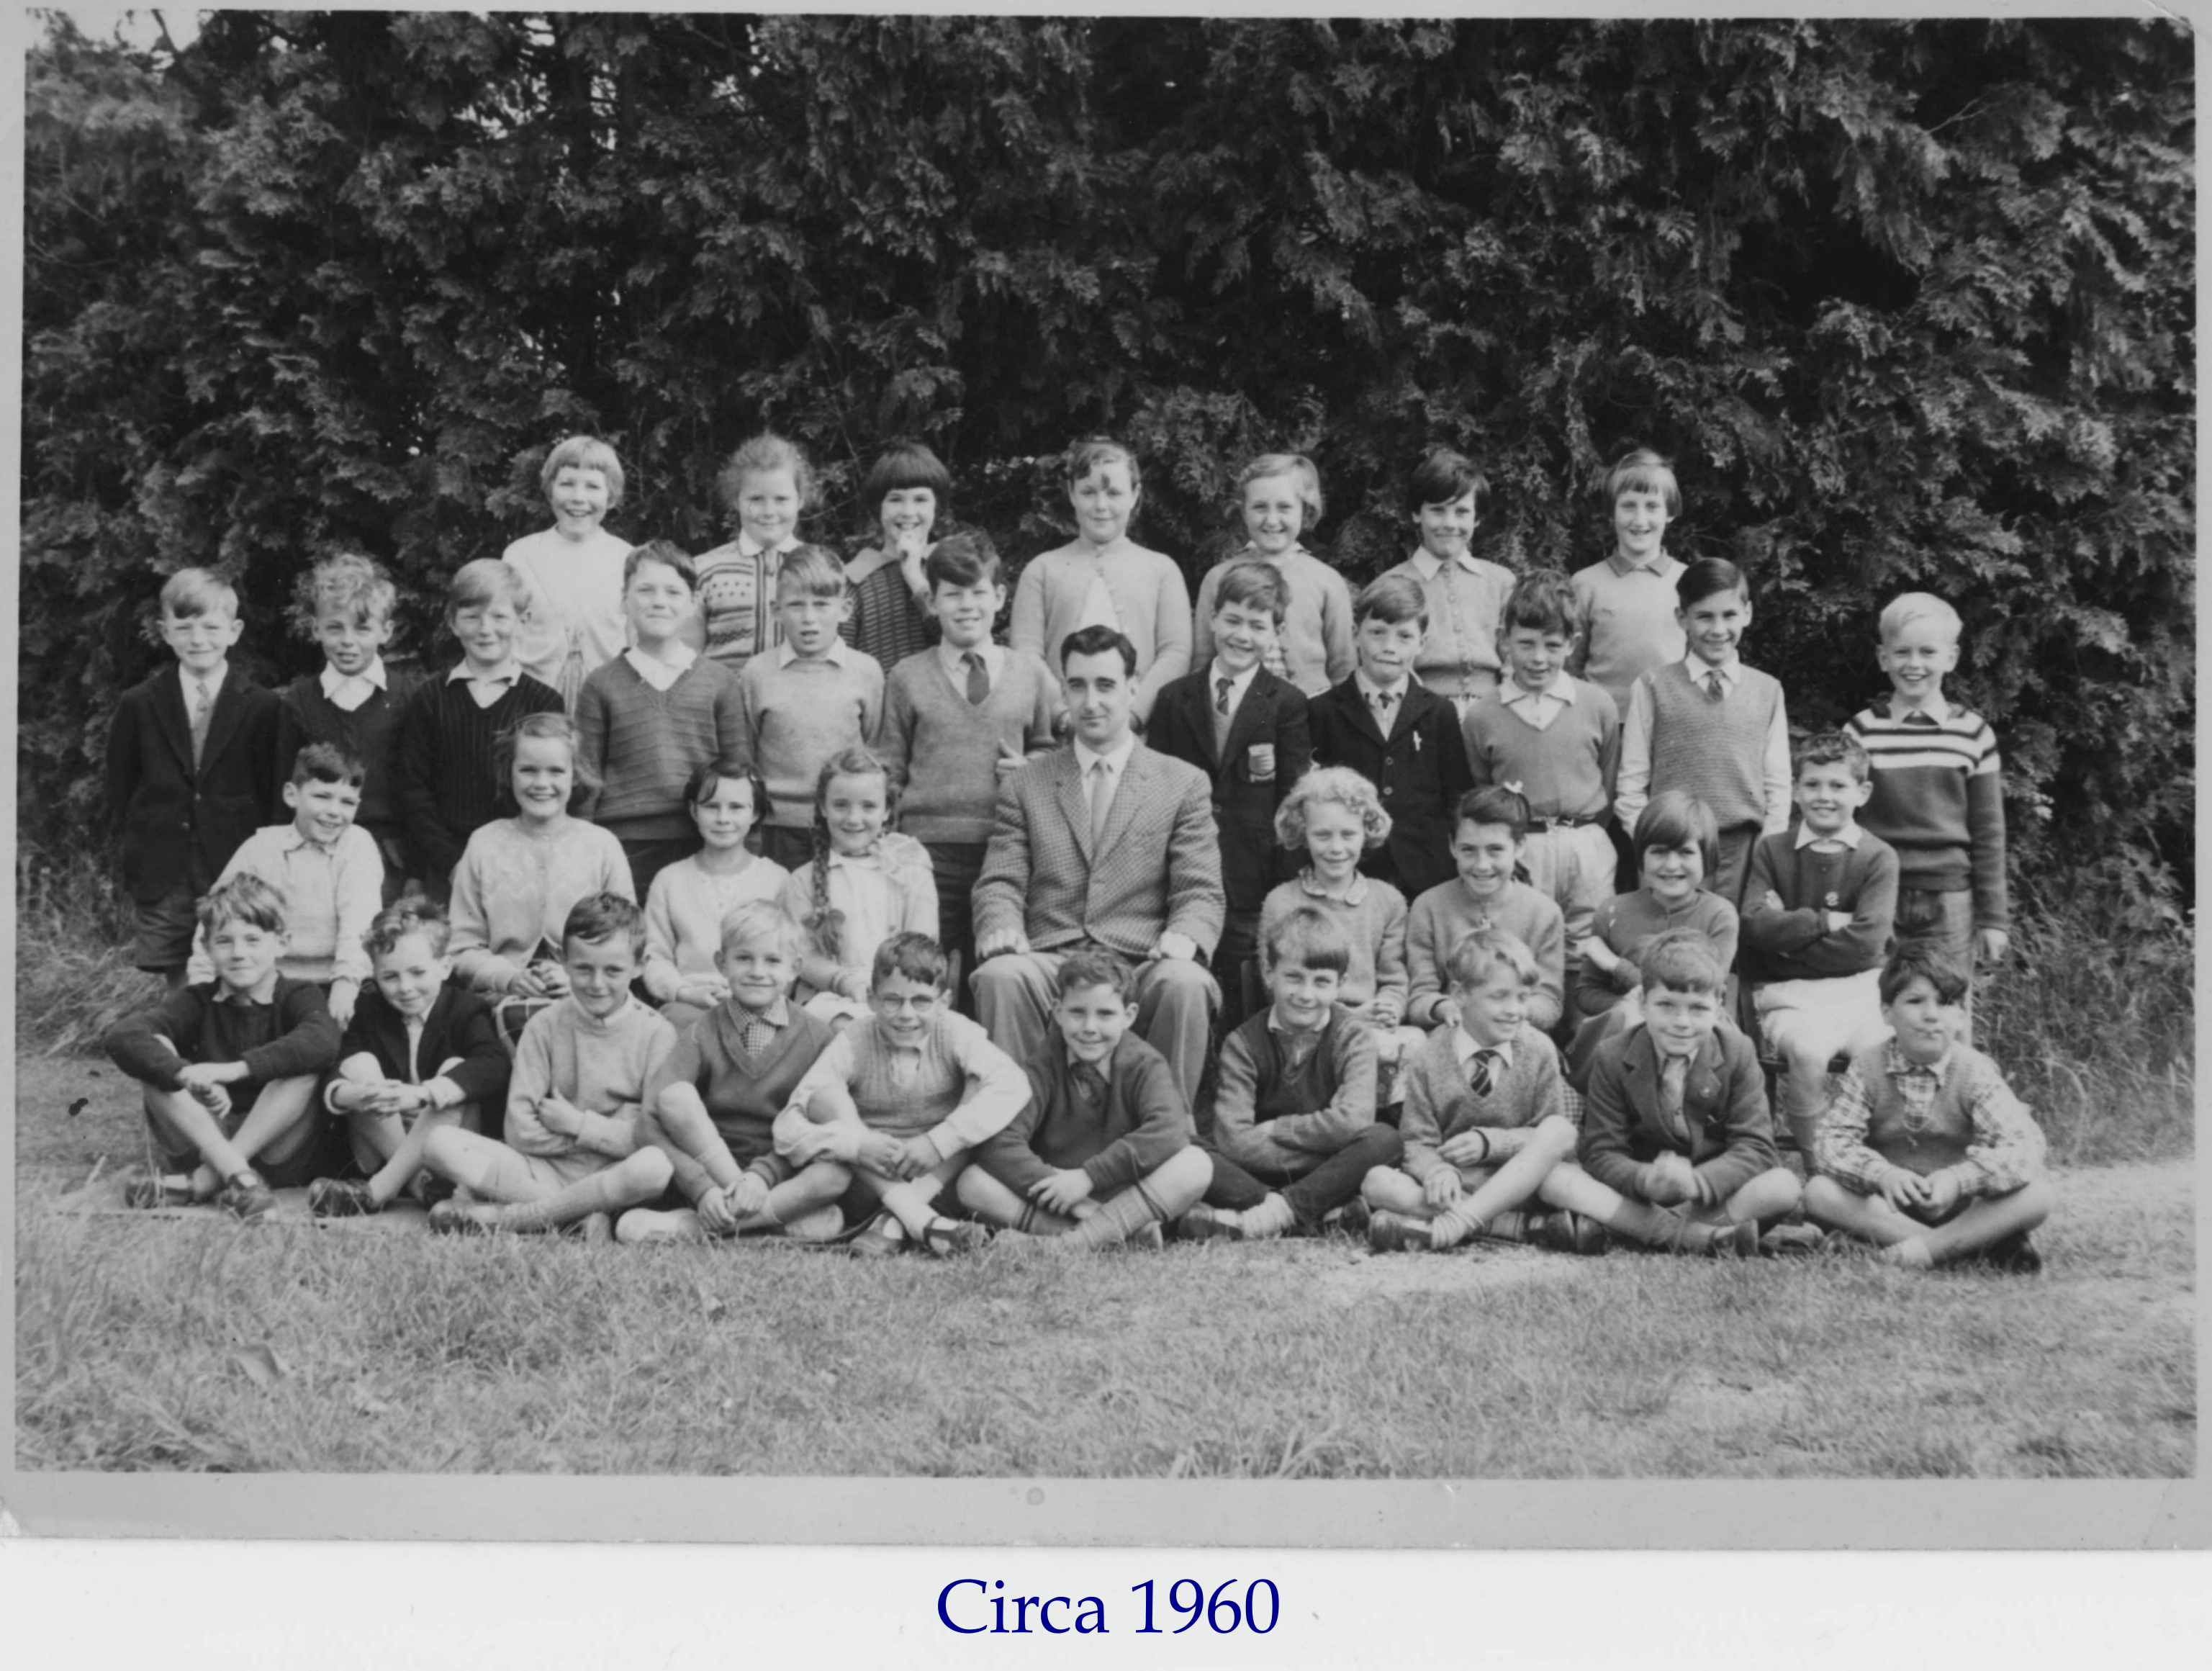 School class of c.1961